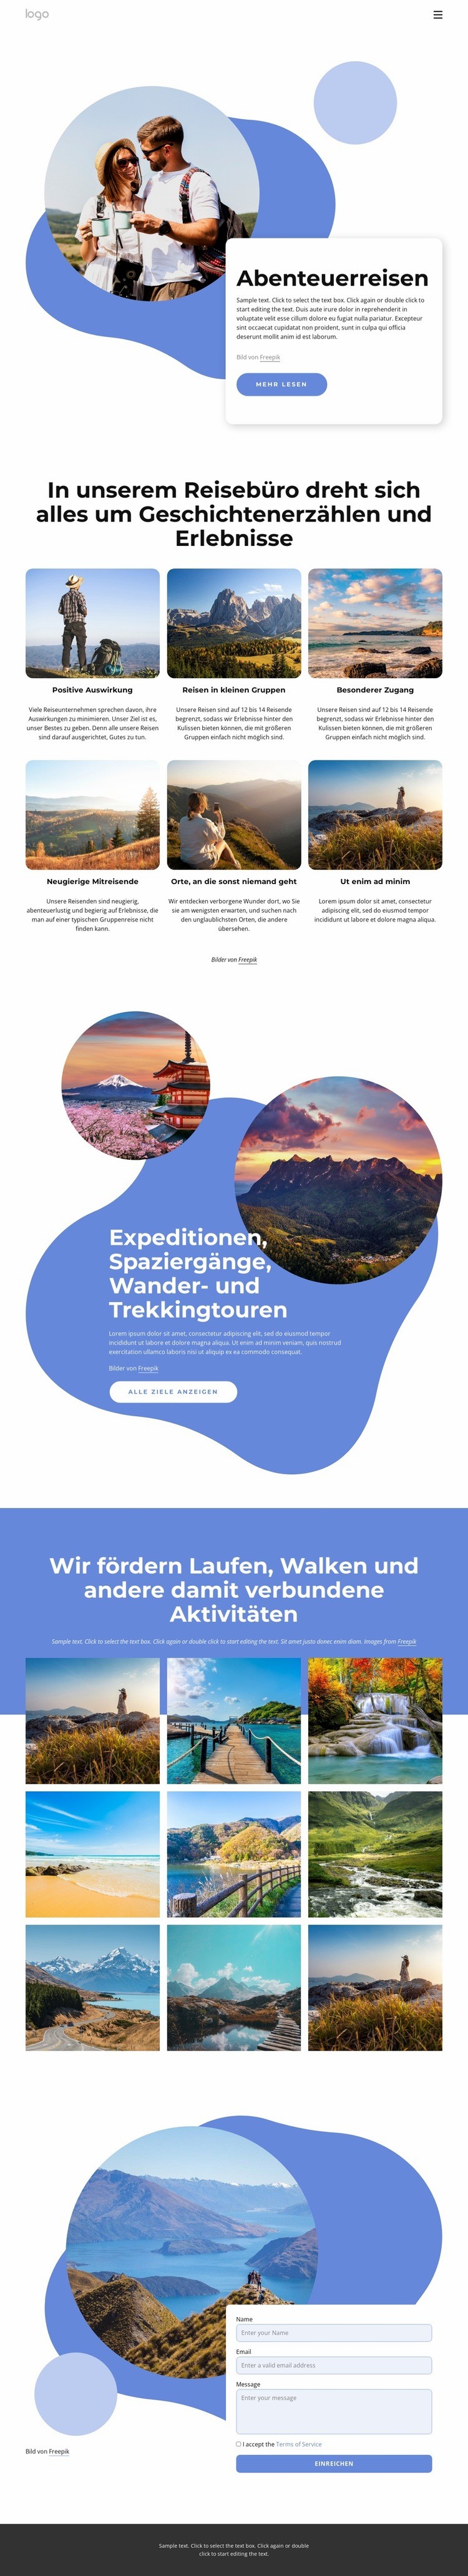 Agentur, die sich auf Luxus-Abenteuerreisen spezialisiert hat Website-Modell